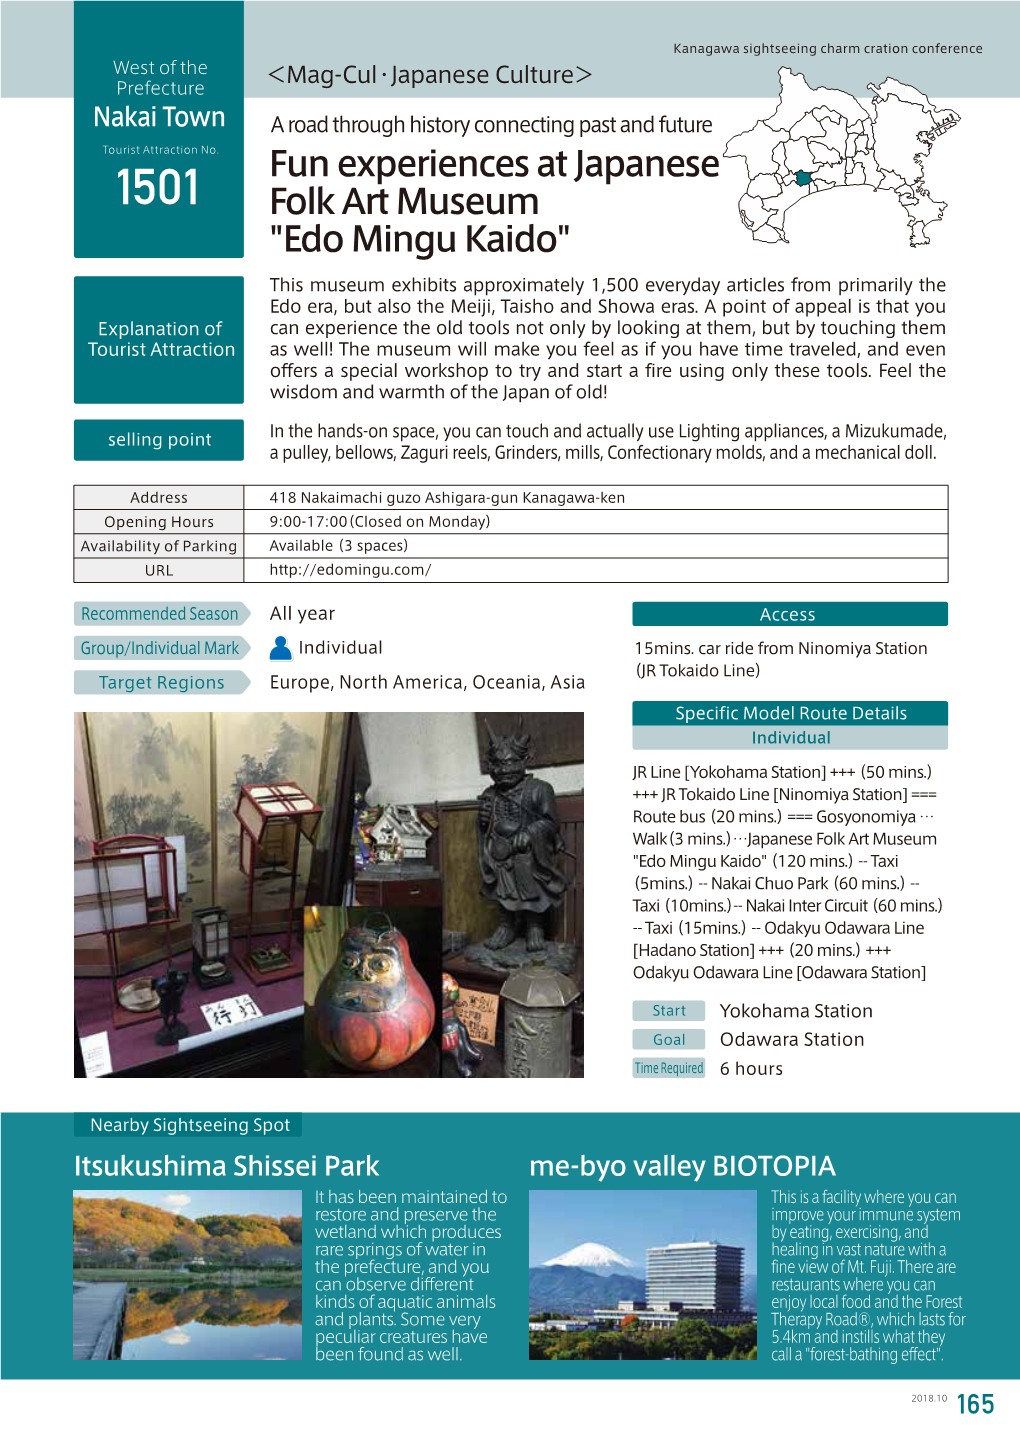 Fun Experiences at Japanese Folk Art Museum "Edo Mingu Kaido"